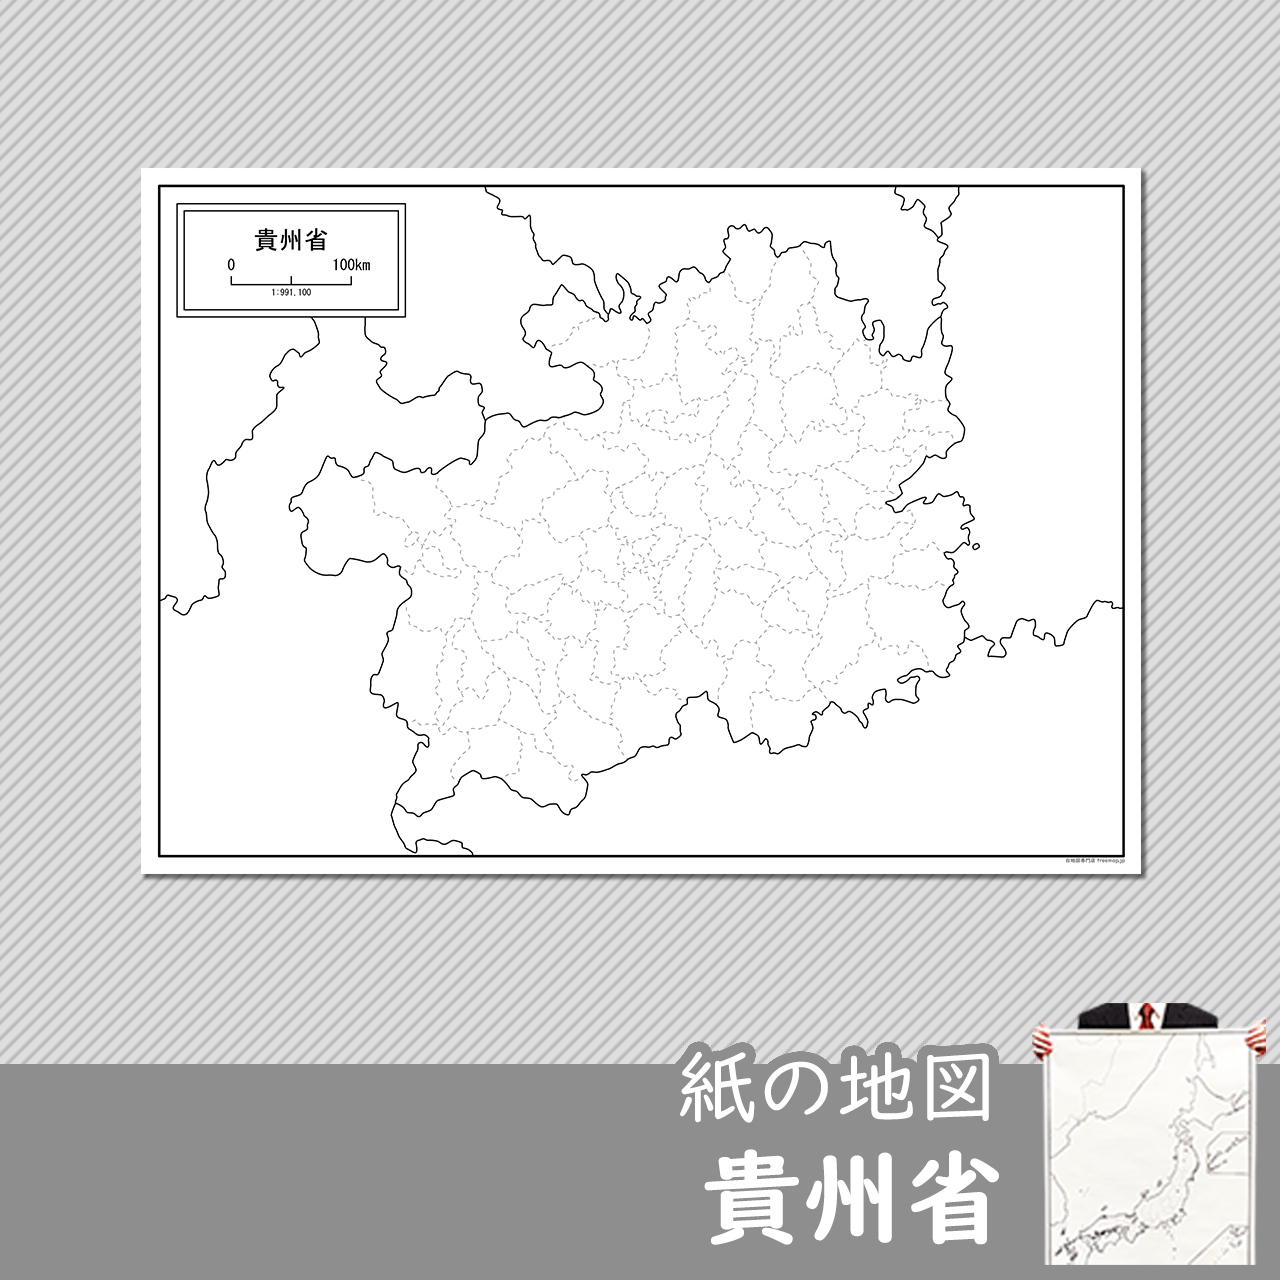 貴州省（きしゅうしょう）の紙の白地図のサムネイル